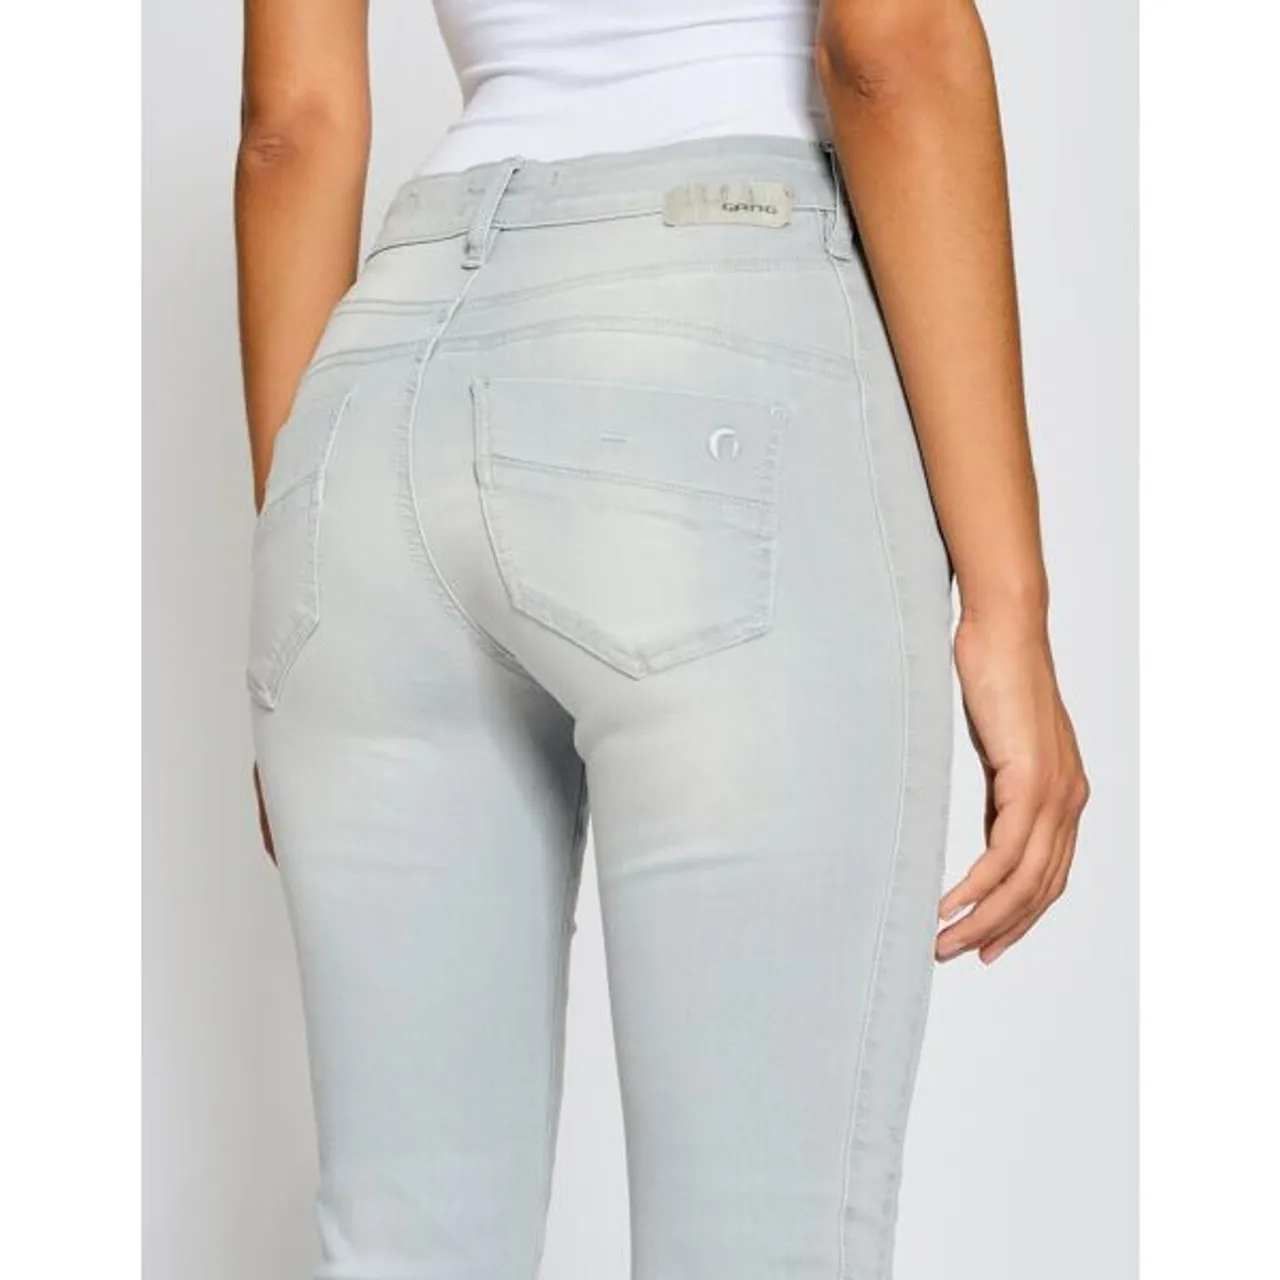 Slim-fit-Jeans GANG "94Sana" Gr. 28, N-Gr, grau (grey light noble) Damen Jeans Röhrenjeans